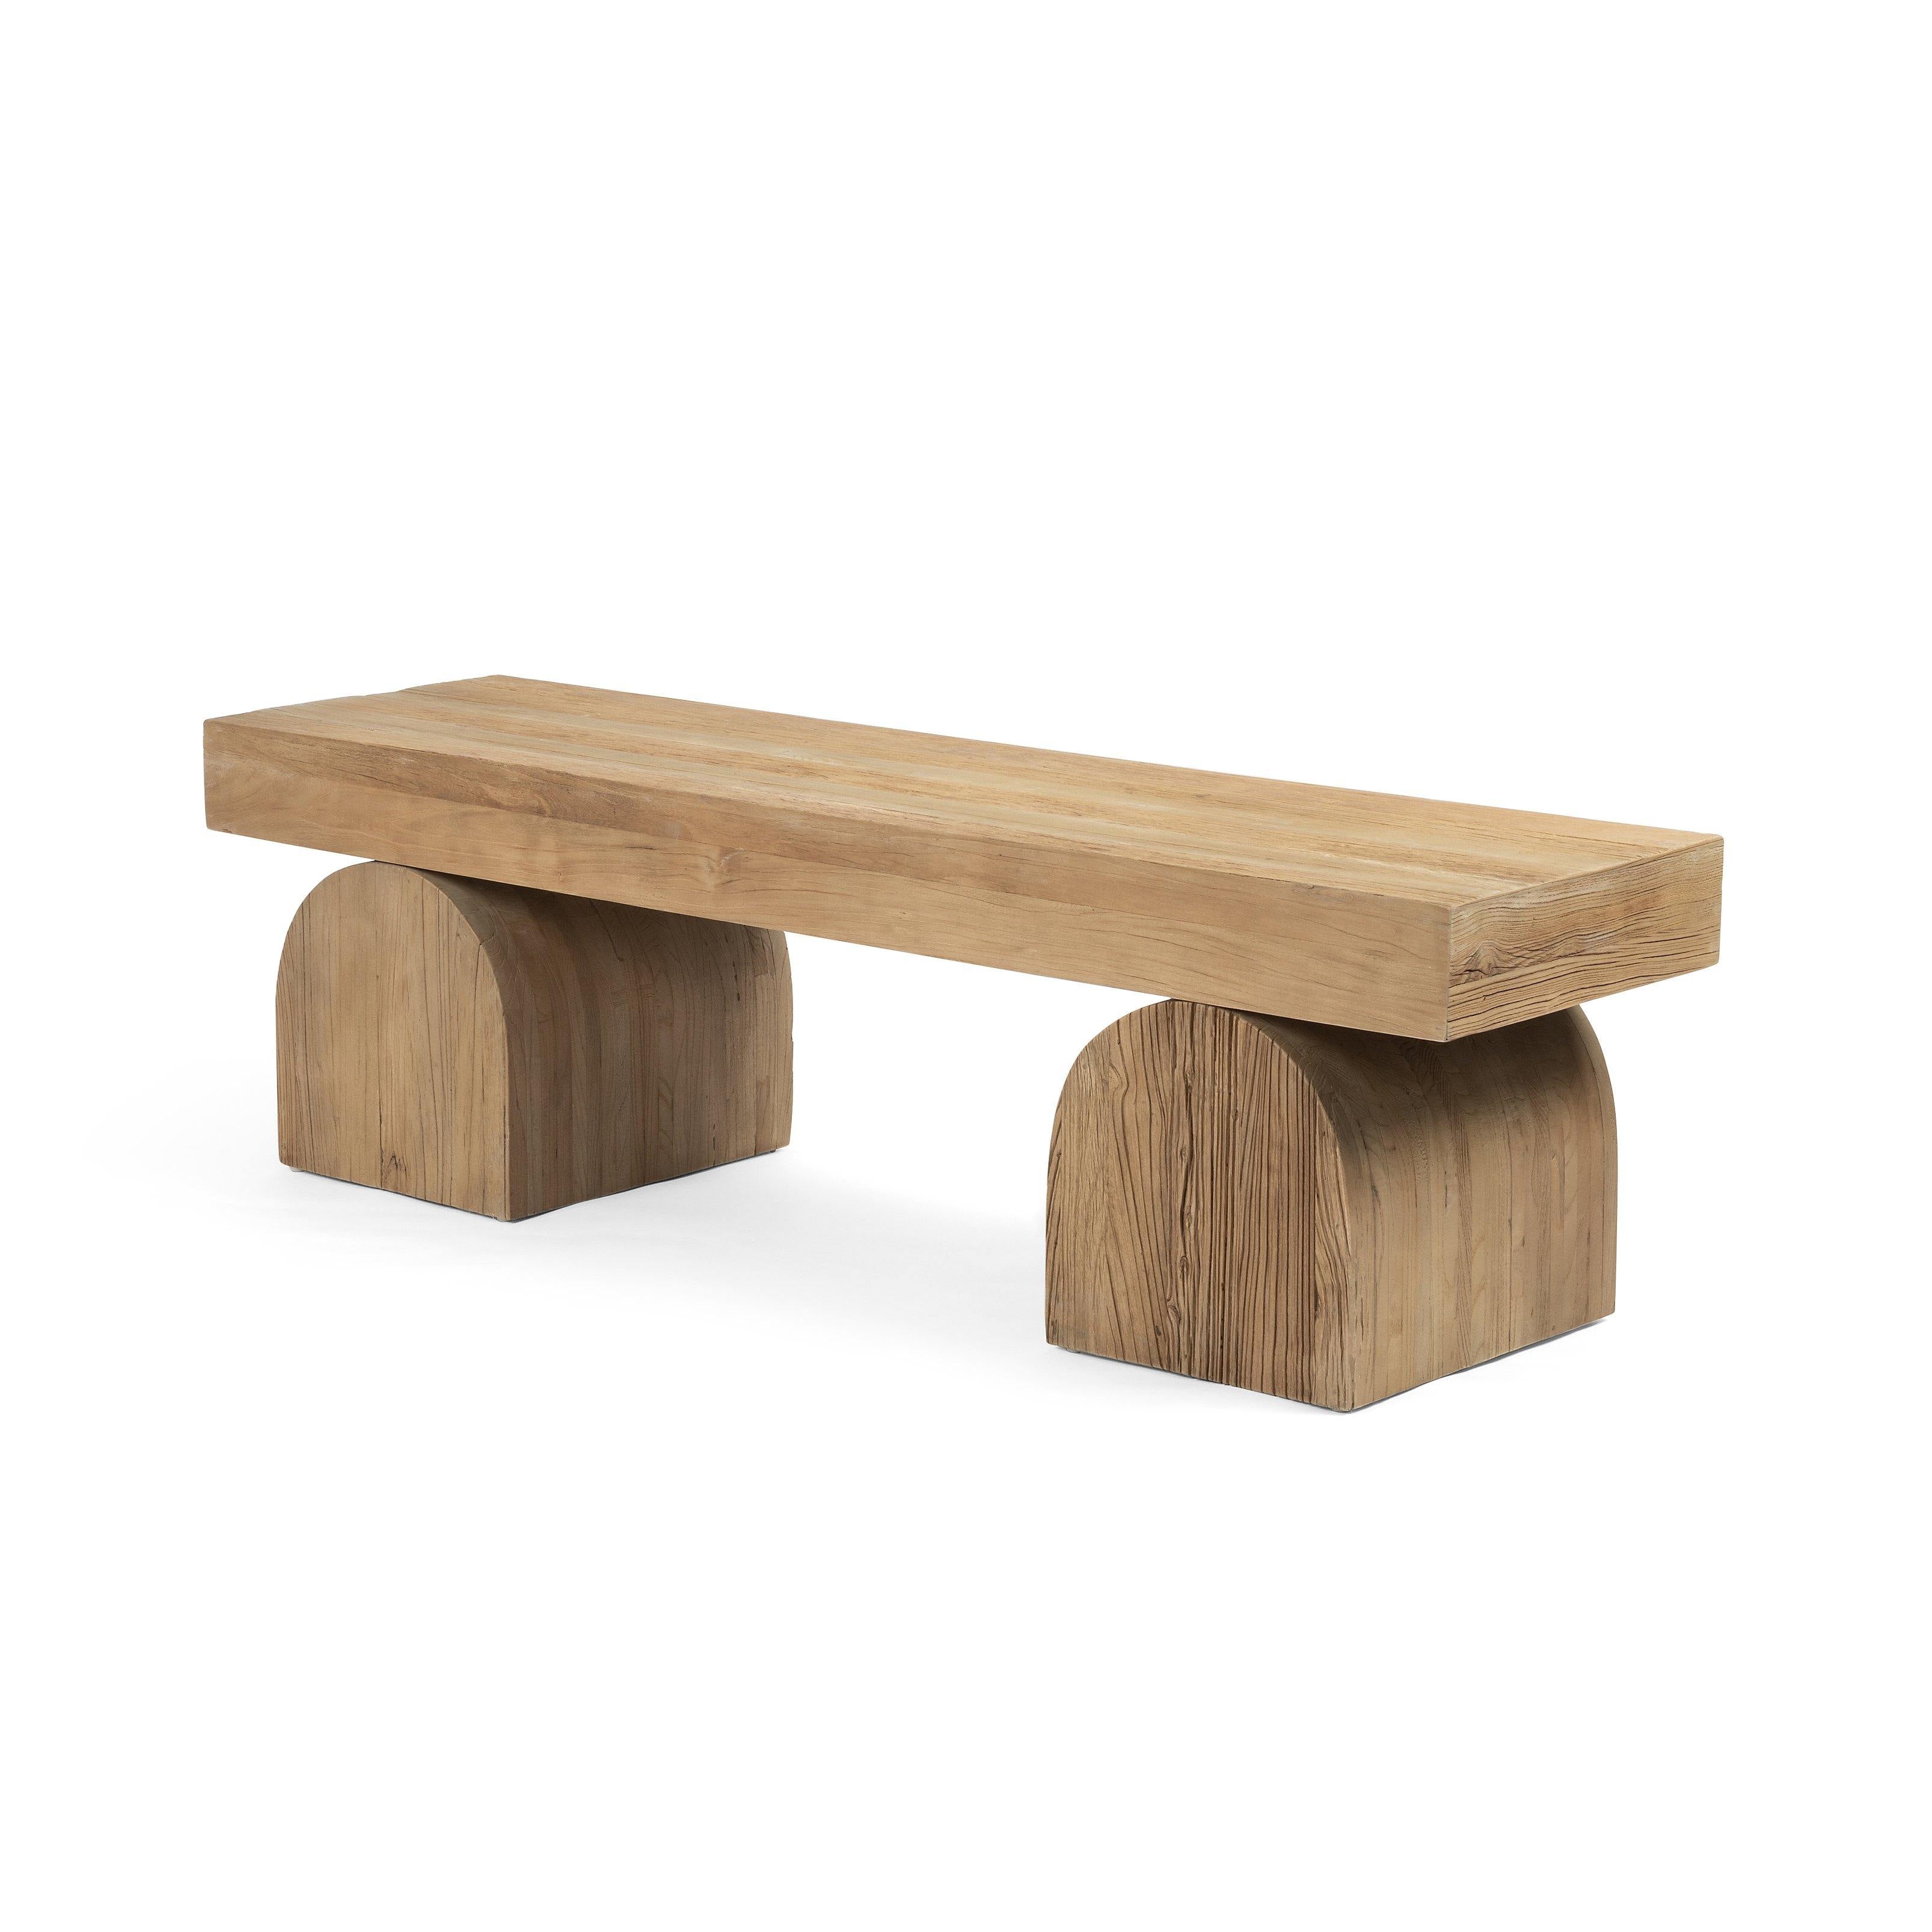 Keane Bench - Reimagine Designs - bench